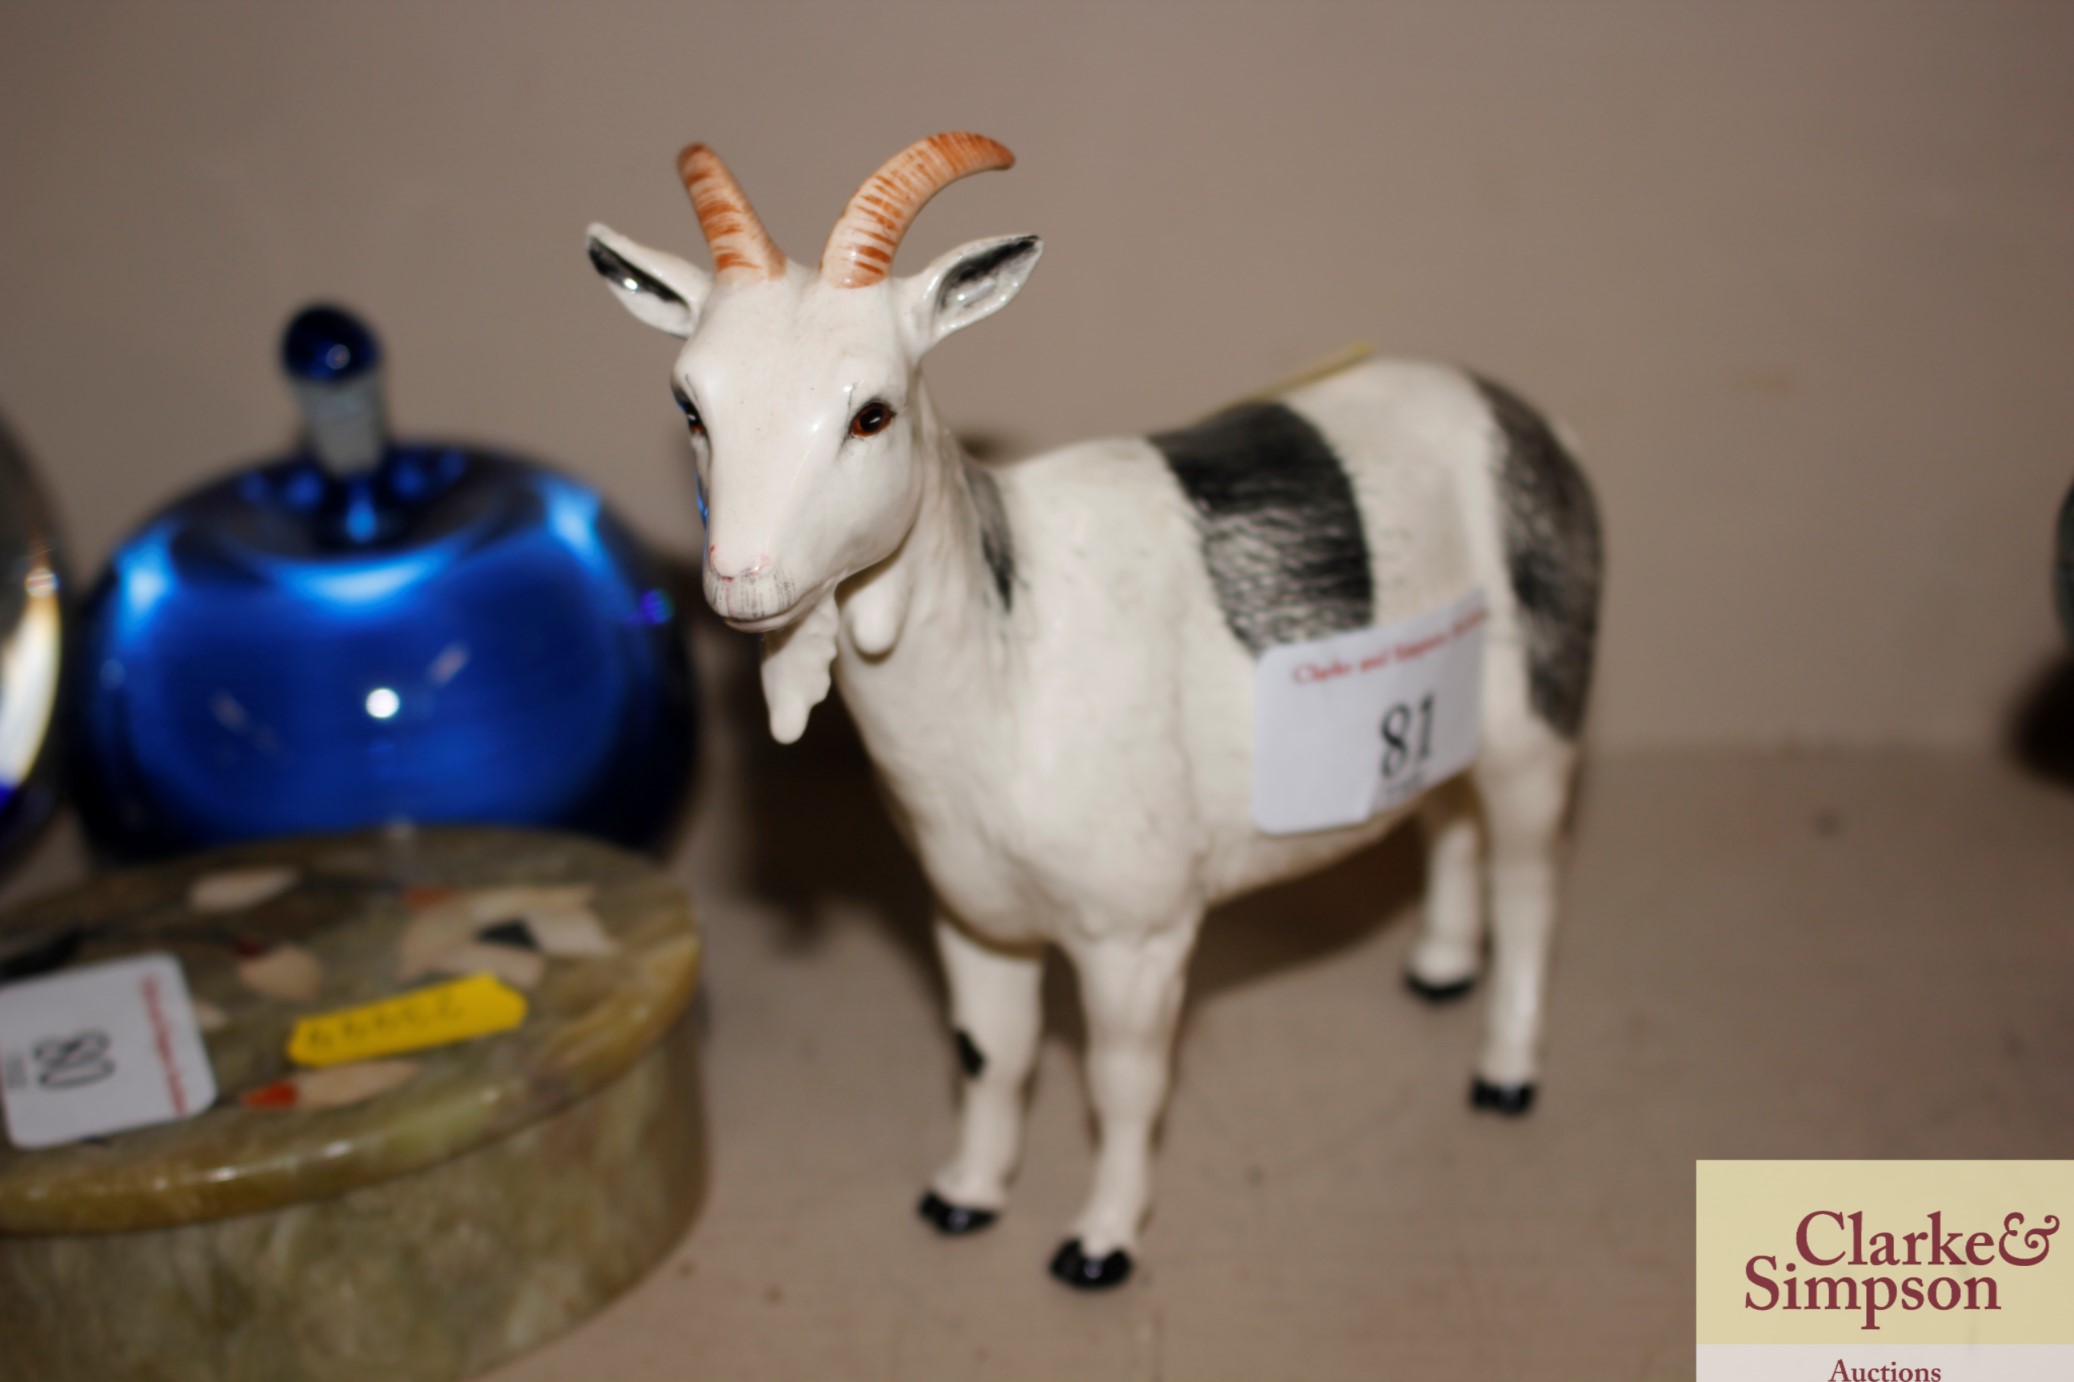 A Beswick figure of a goat